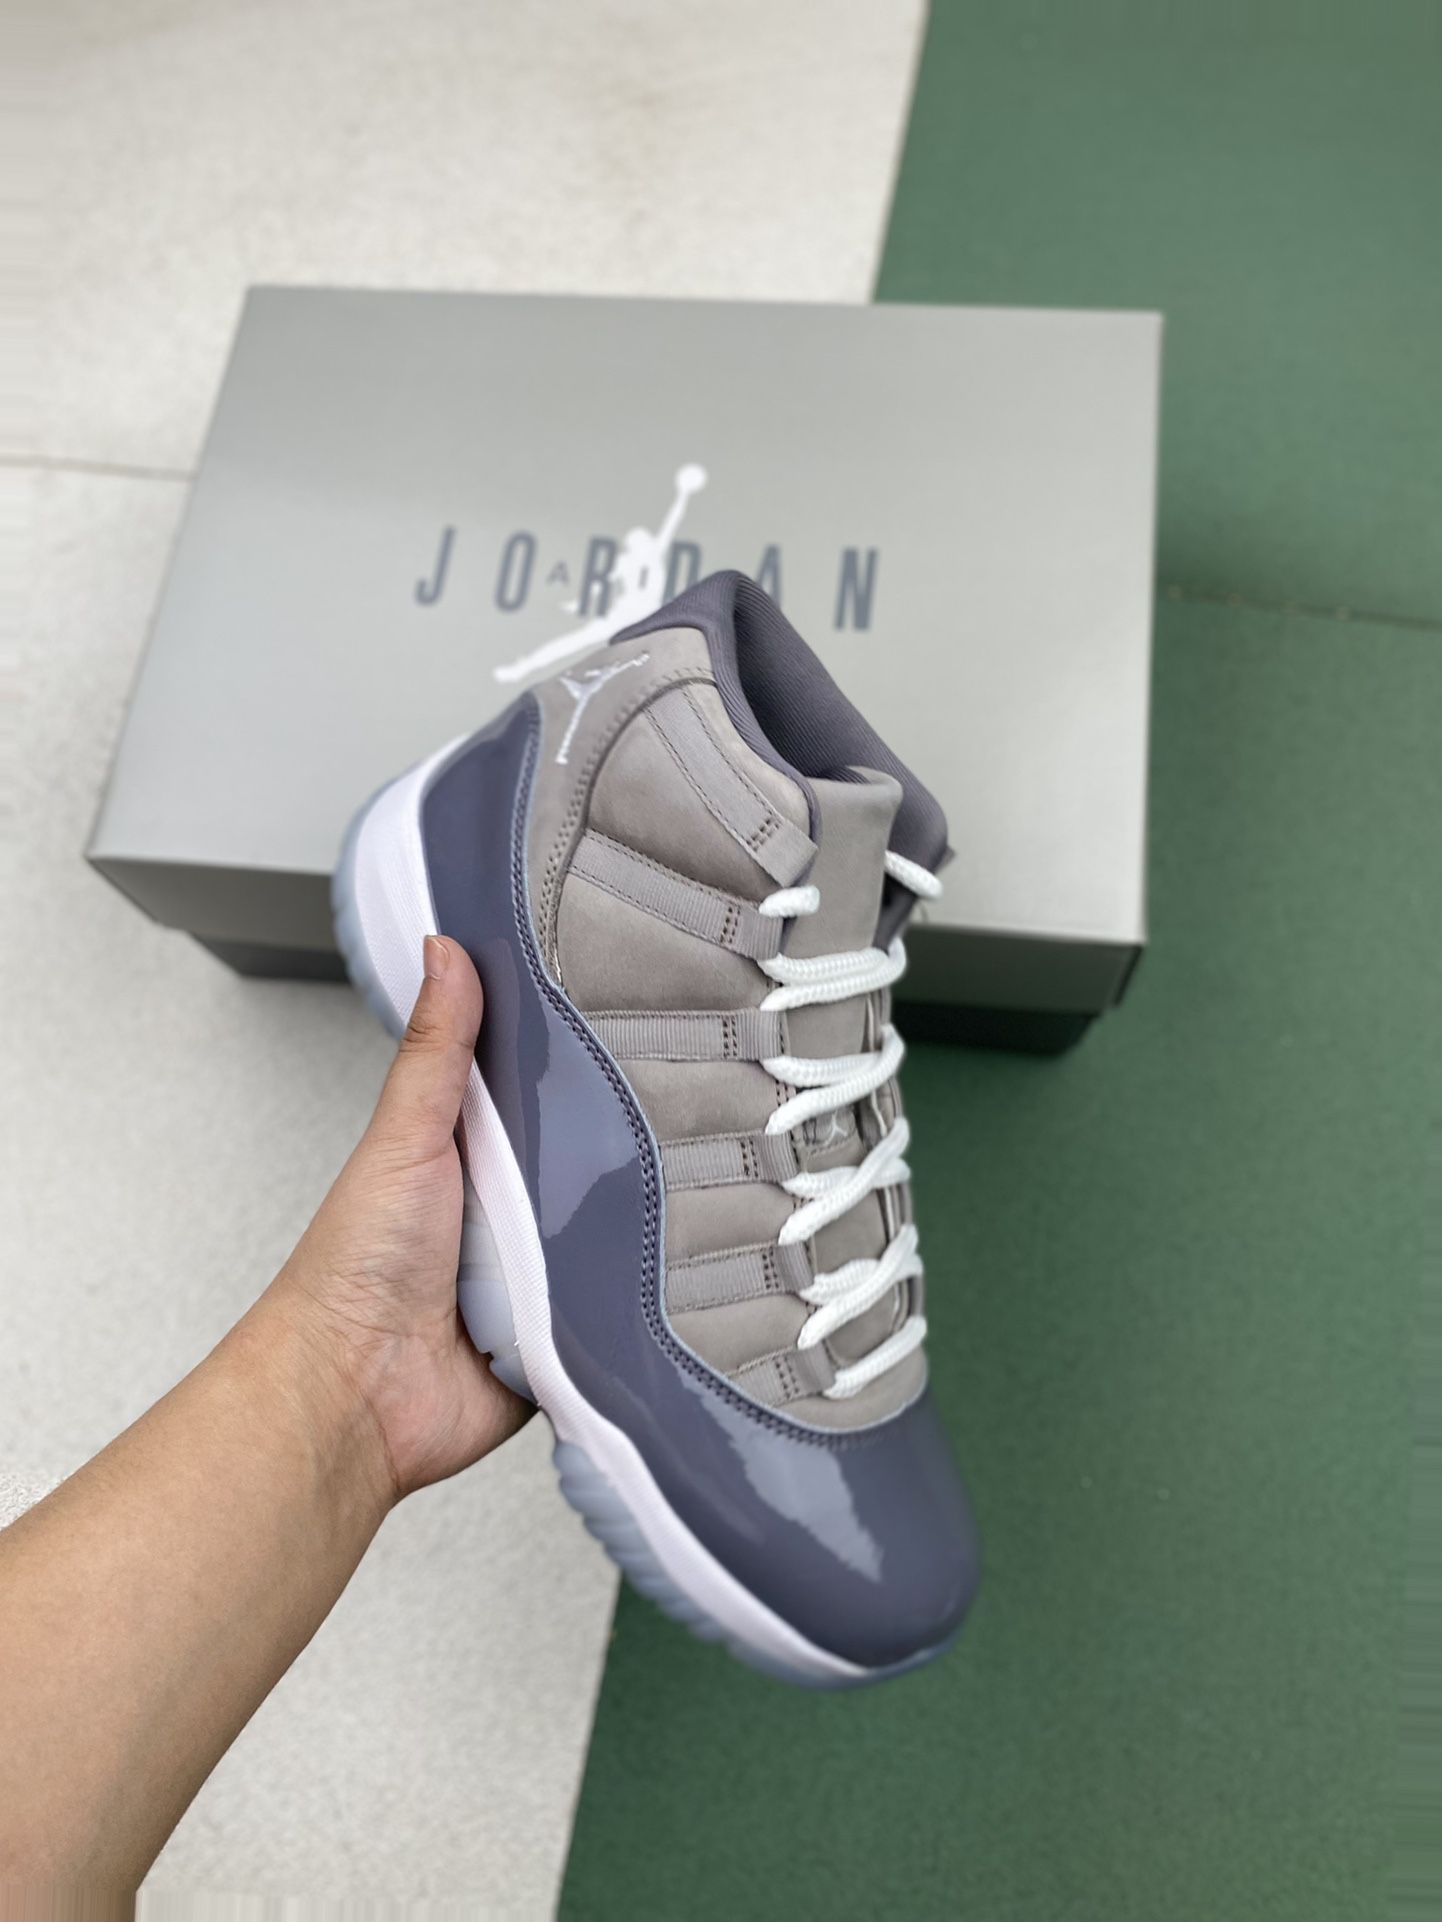 Jordan 11 Cool Grey 107 